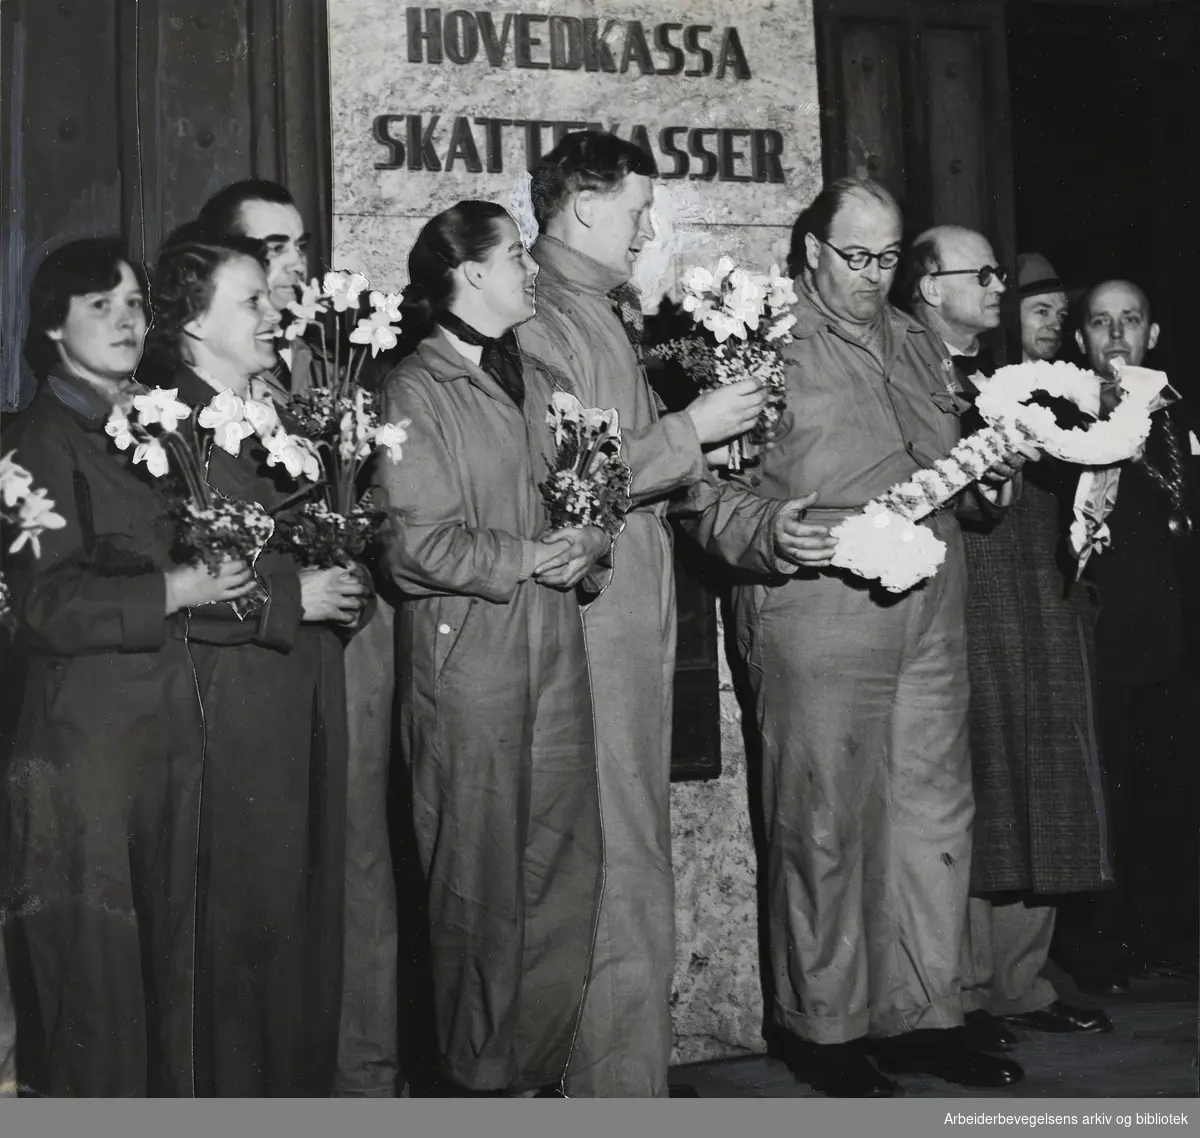 India-hjelpen. Folkeaksjonen for India. Rådhusplassen i Oslo. På bildet sees blant andre programsjef Thorstein Diesen, Gudrun Sunde og ordfører Brynjulf Bull. Del av en direktesending i radio lørdag den 25 april 1953.